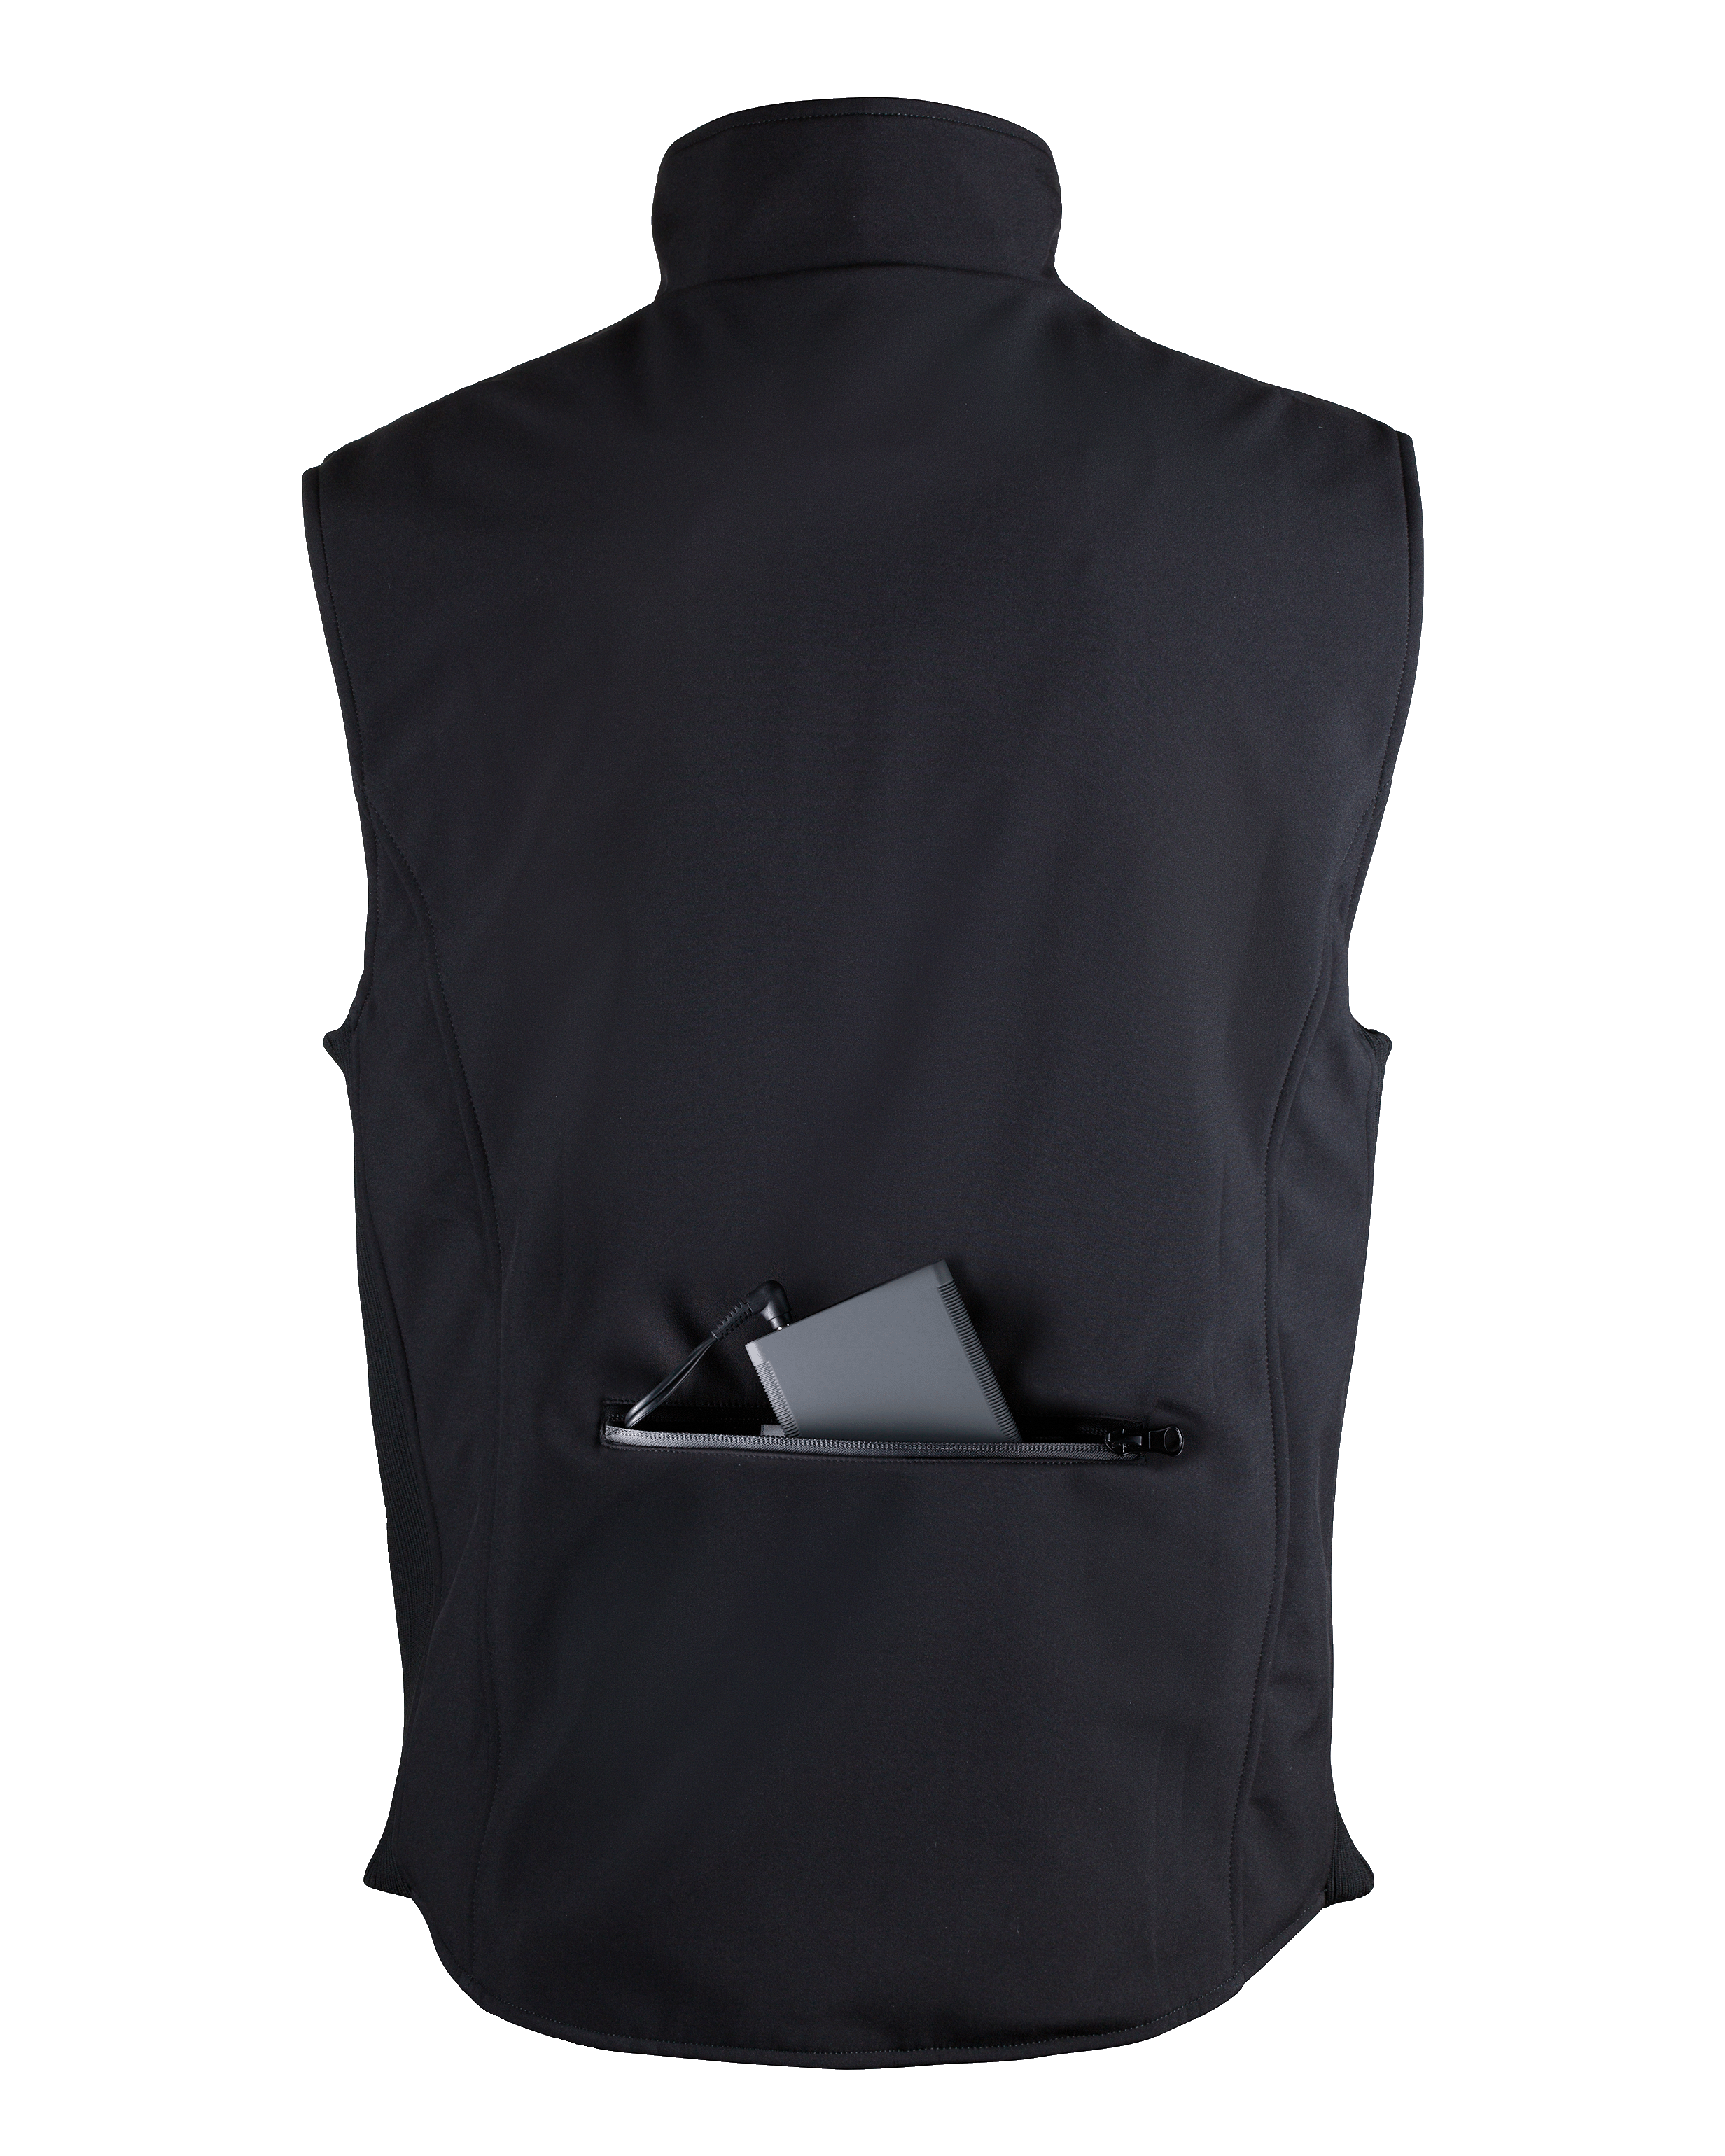 La première génération de veste chauffante PRO – unisexe (vente finale)